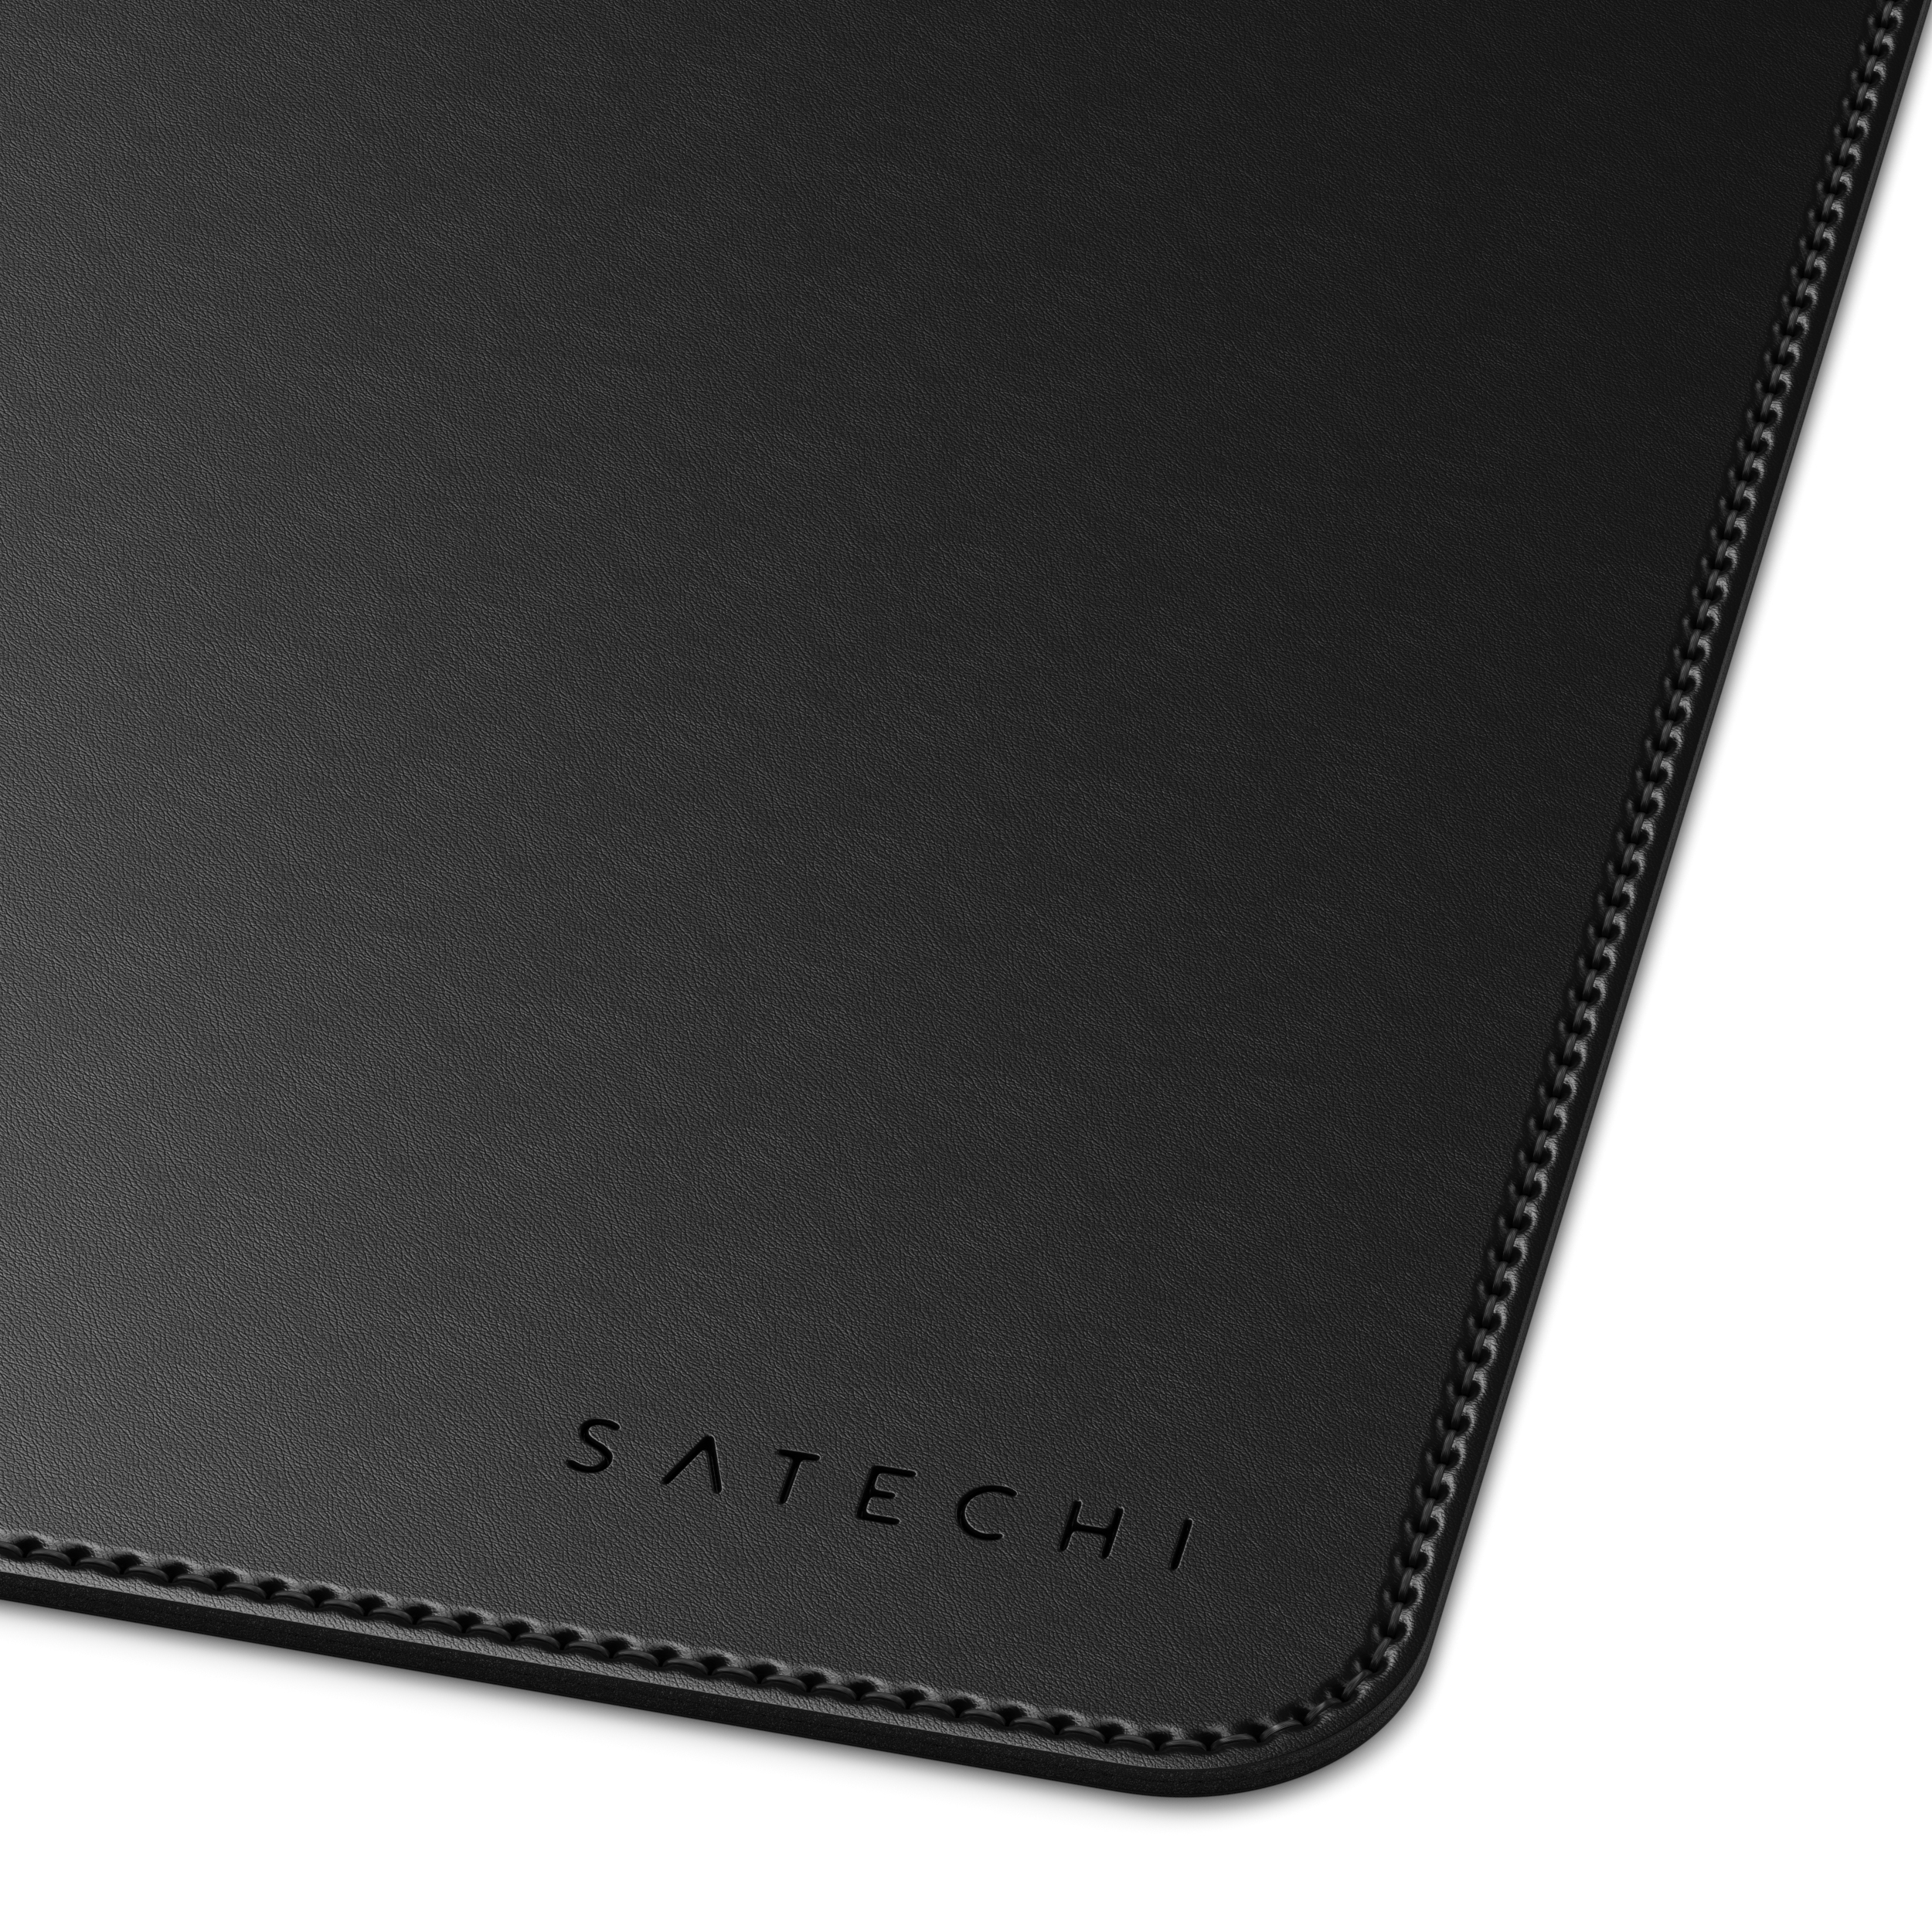 Deskmate Black Mousepad cm) 58,42 Eco-Leather (31 SATECHI - cm x